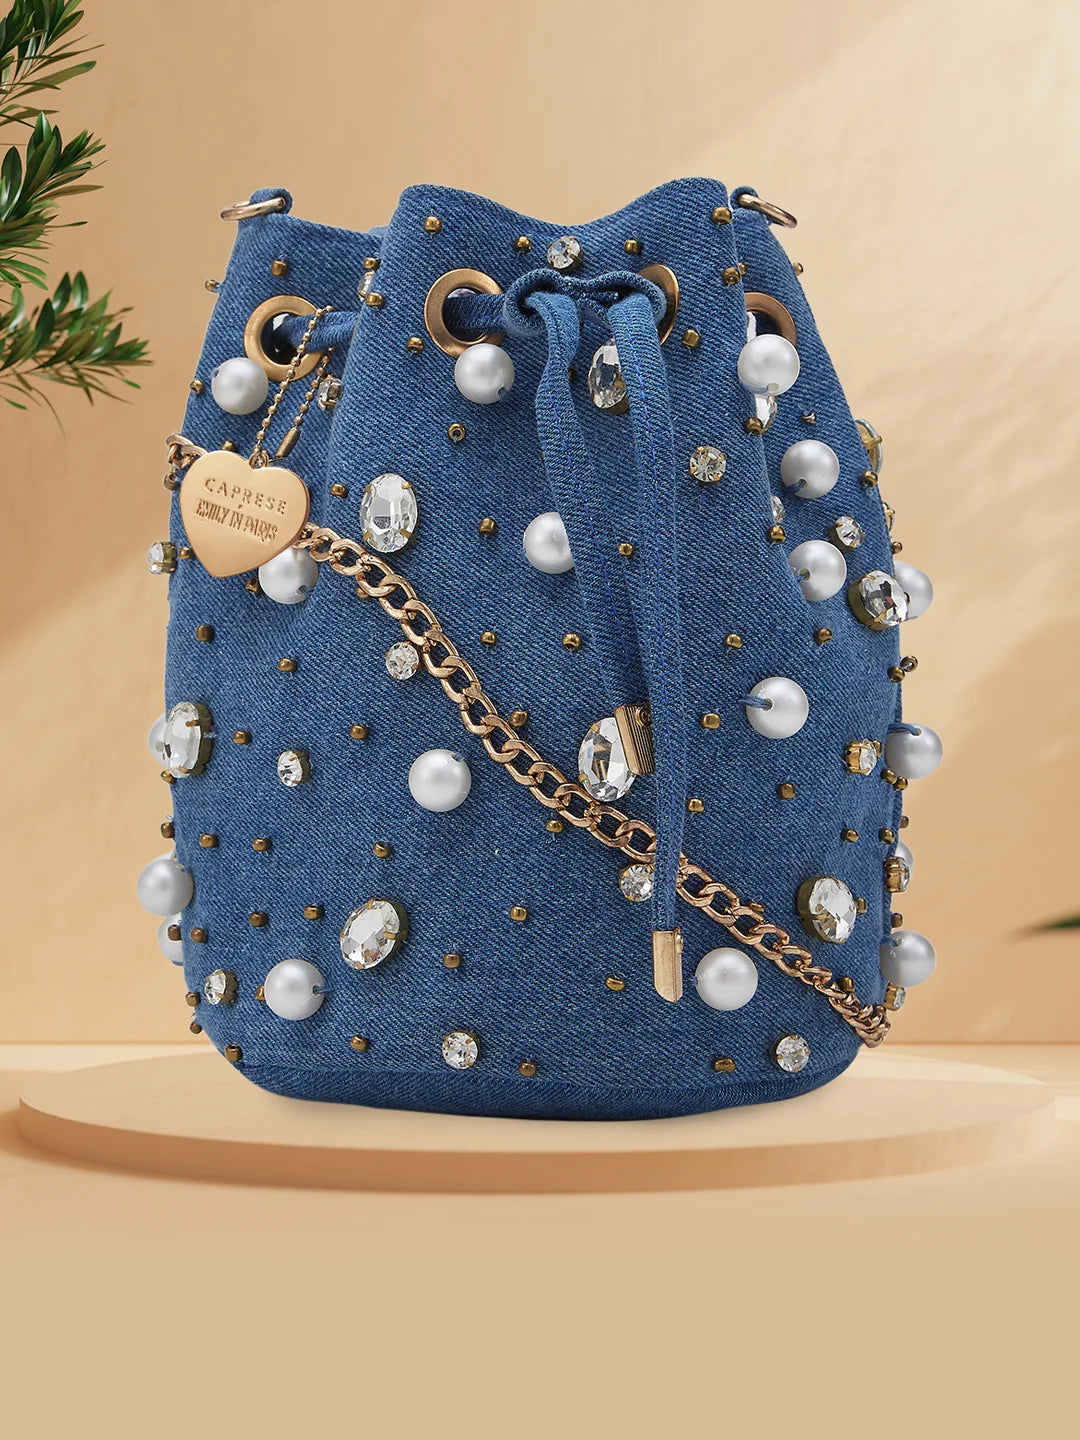 Caprese Emily in Paris Solid Small Sling Handbag – Caprese Bags